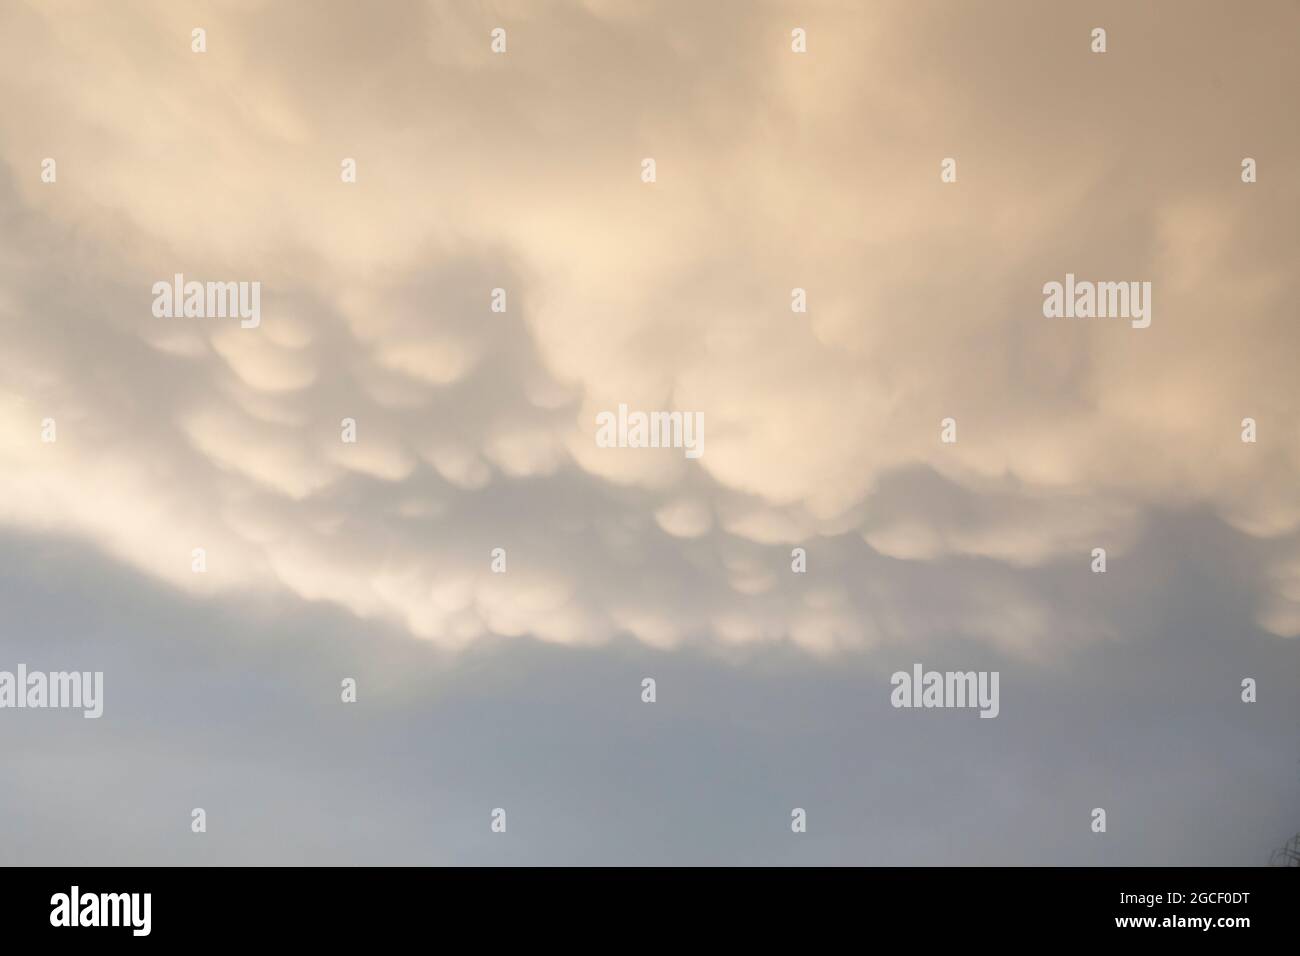 Le nuvole di Mammatus creano uno sguardo frontale e drammatico nel cielo del pomeriggio. Ideale per l'uso con lo strumento Sostituzione cielo di Photoshop. Foto Stock